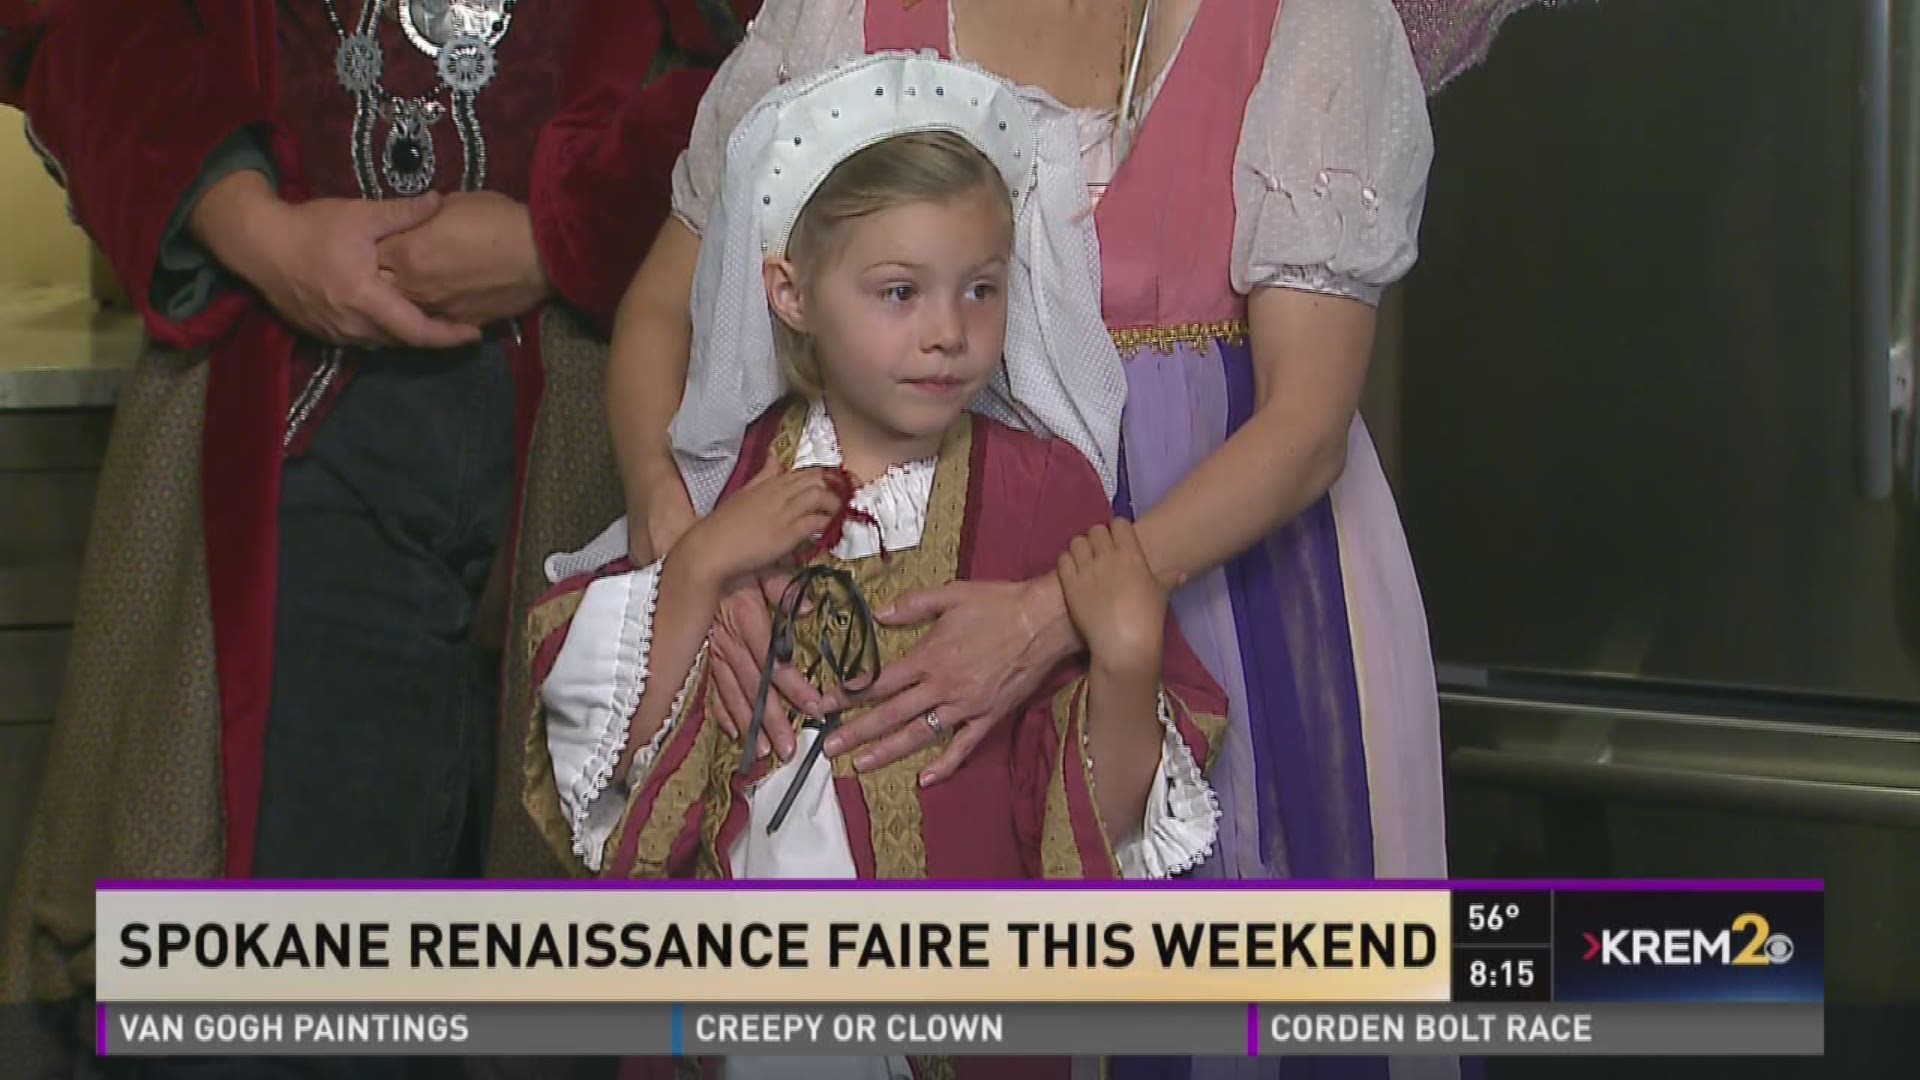 Spokane Renaissance Faire is this weekend